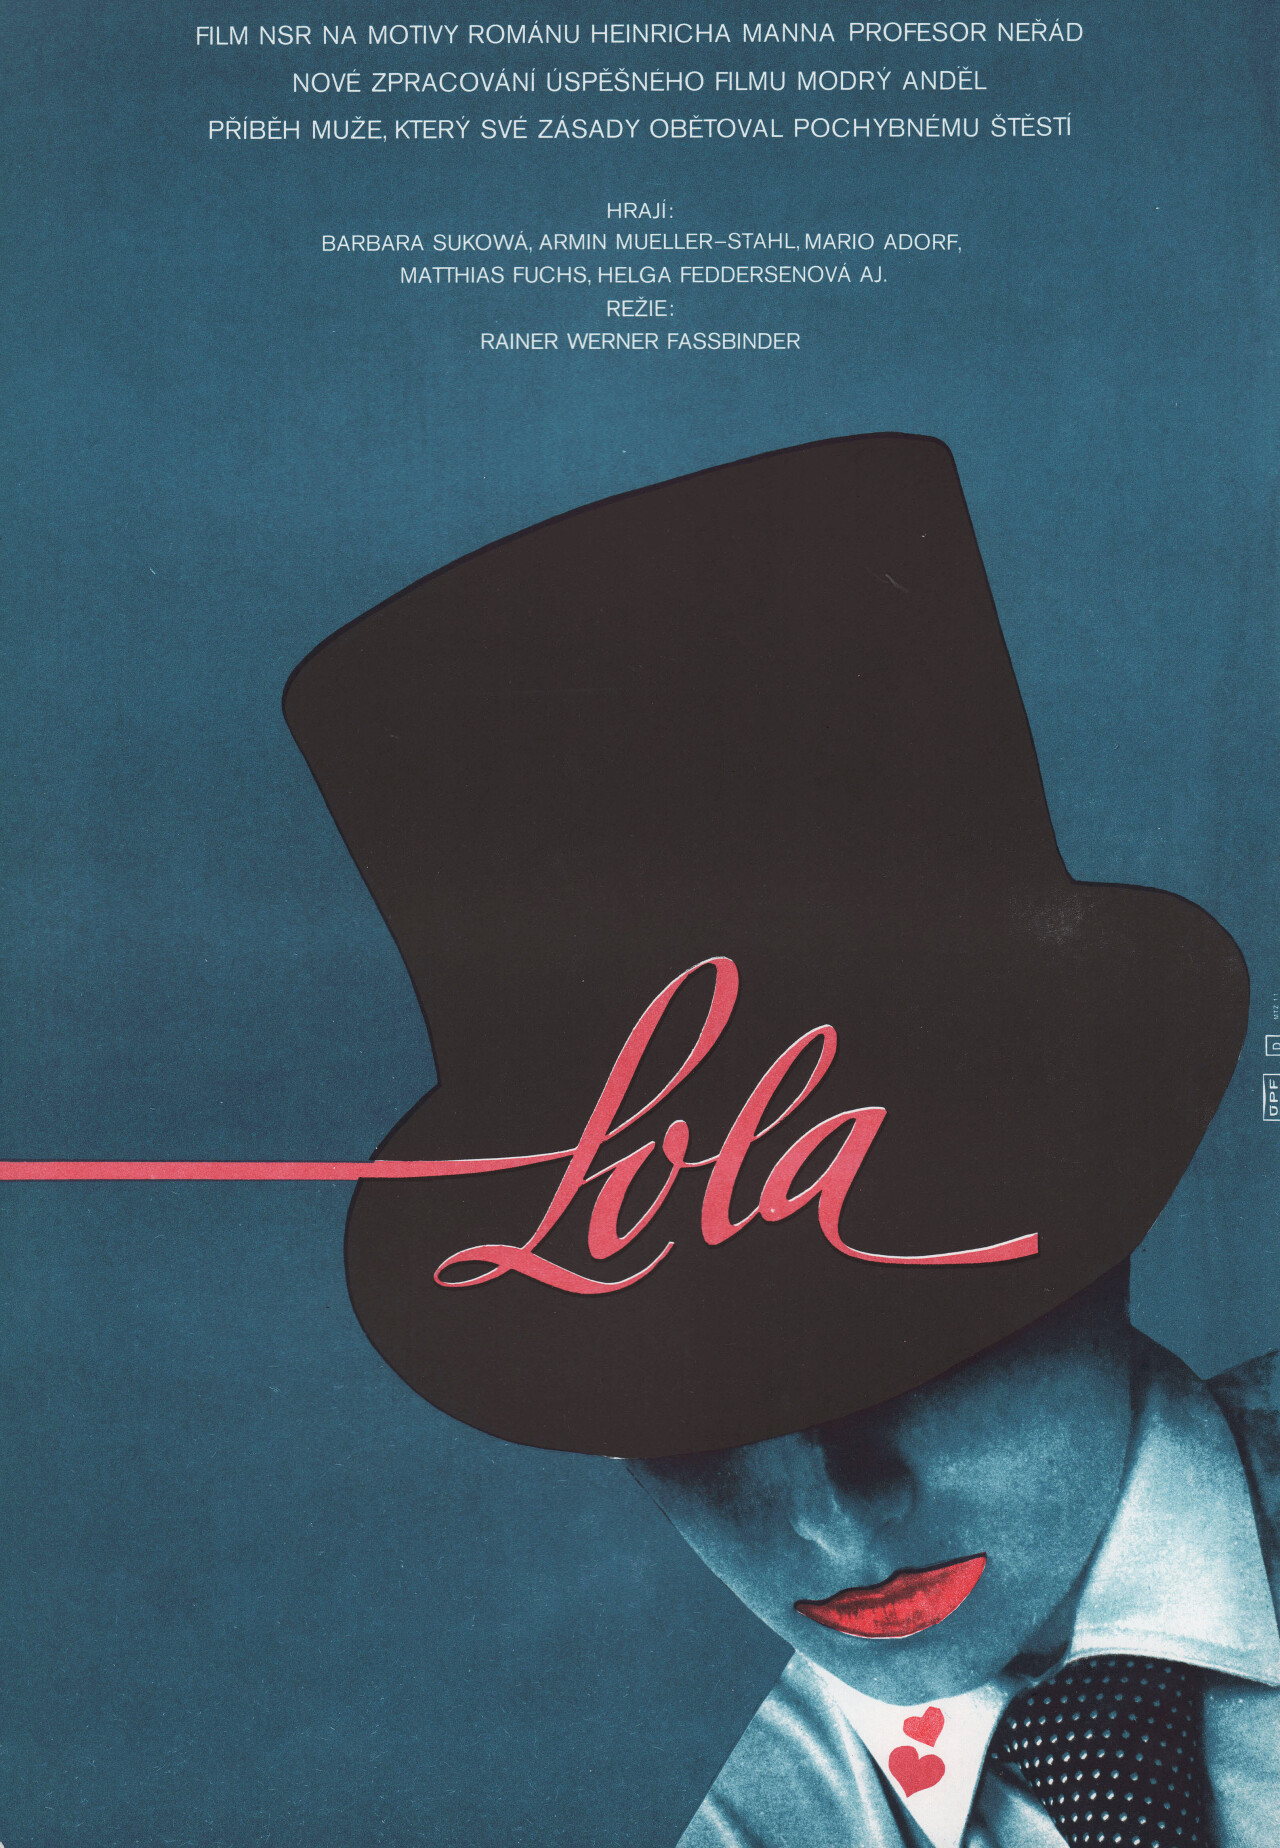 Лола (Lola, 1981), режиссёр Райнер Вернер Фассбиндер, минималистичный постер к фильму (Чехословакия, 1982 год), автор Вратислав Шевчик